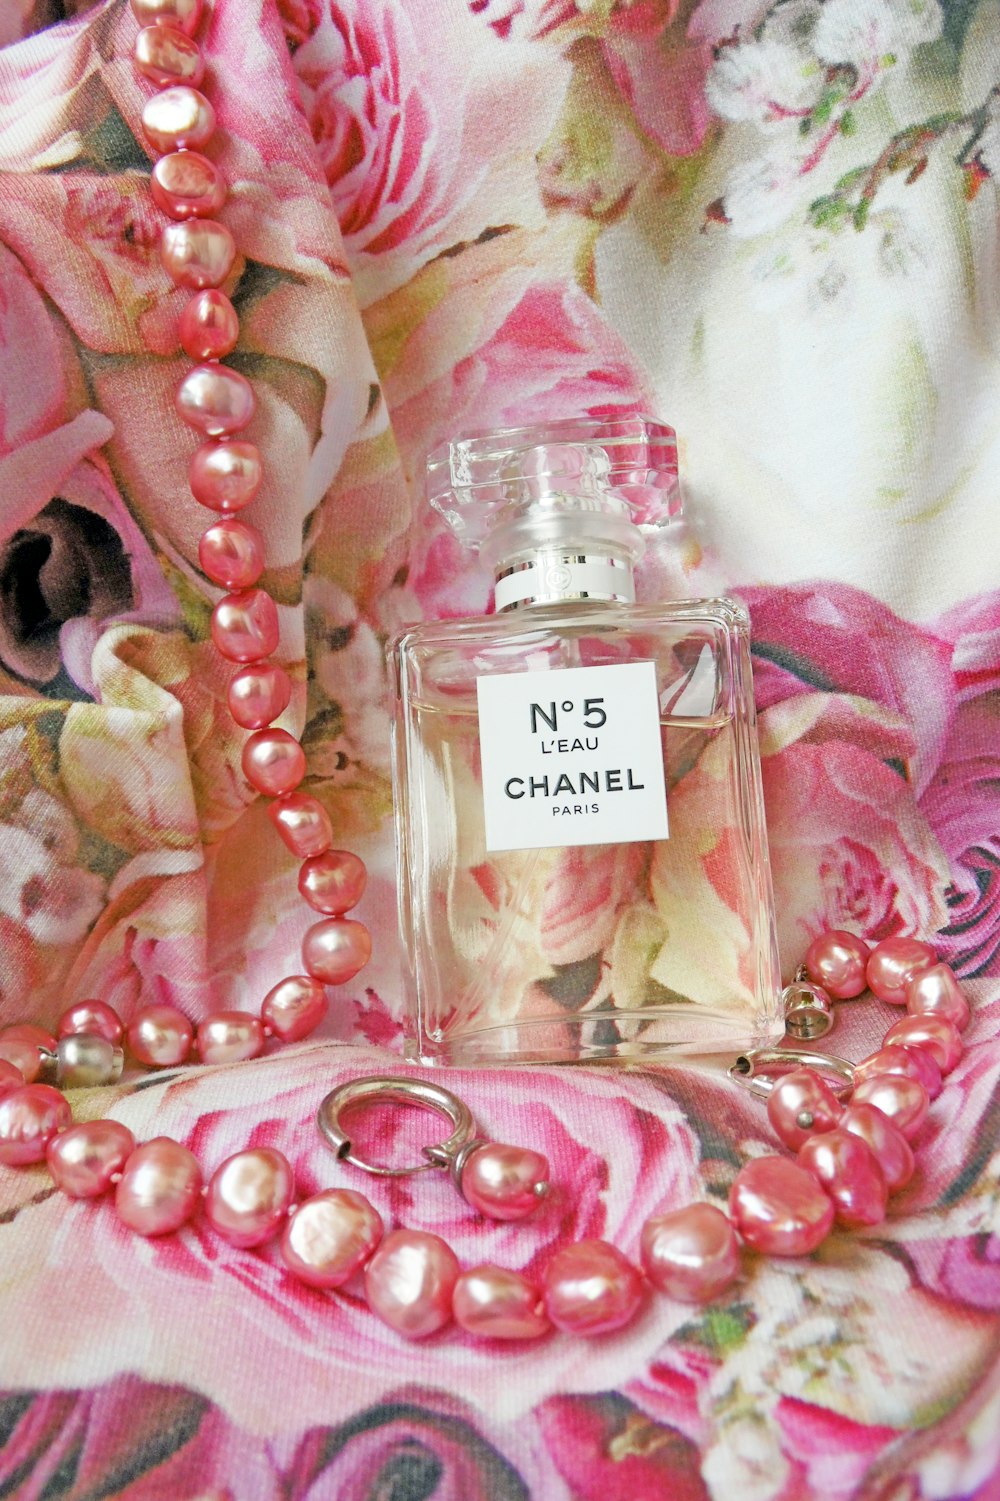 A bottle of perfume photo – Free Chanel Image on Unsplash